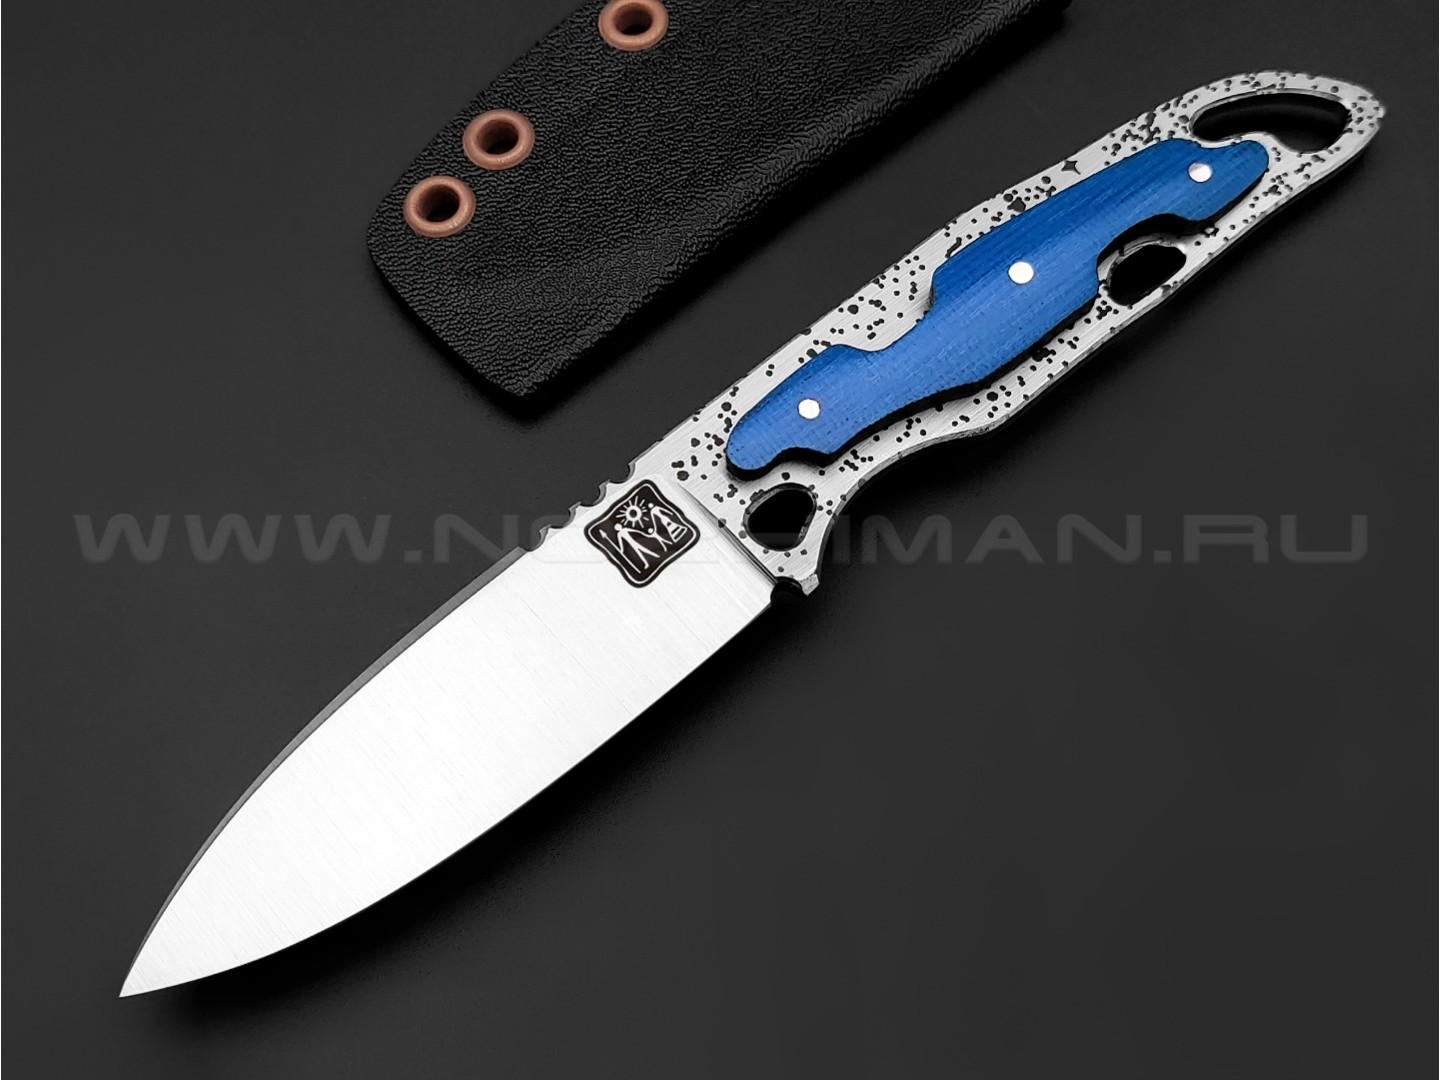 1-й Цех нож "Безымянный" сталь 440C, рукоять микарта blue